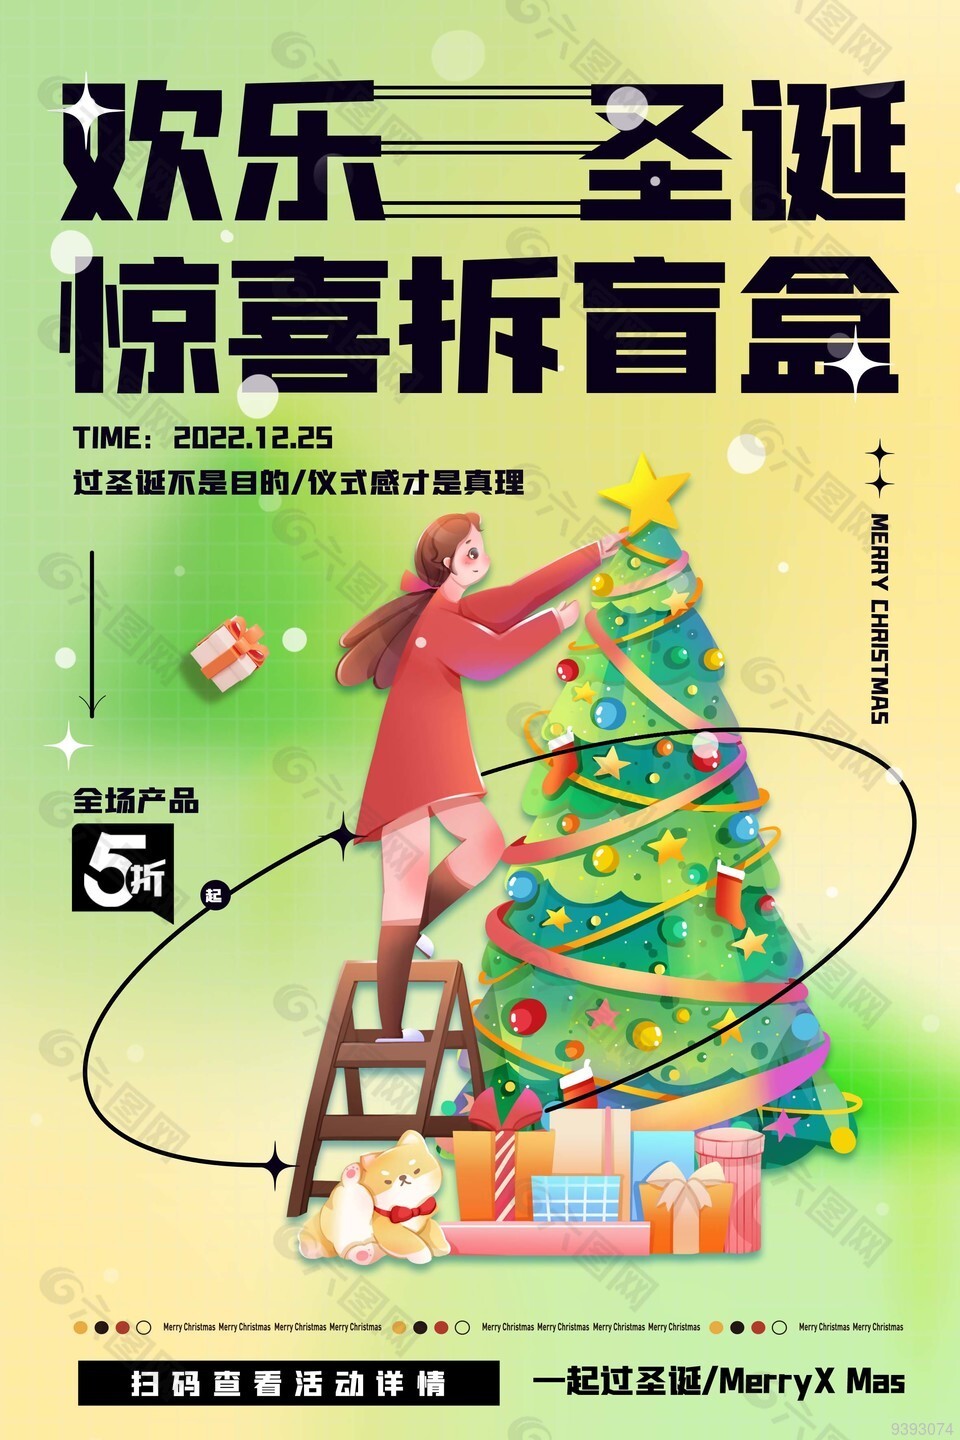 一起欢乐过圣诞商场活动海报图片